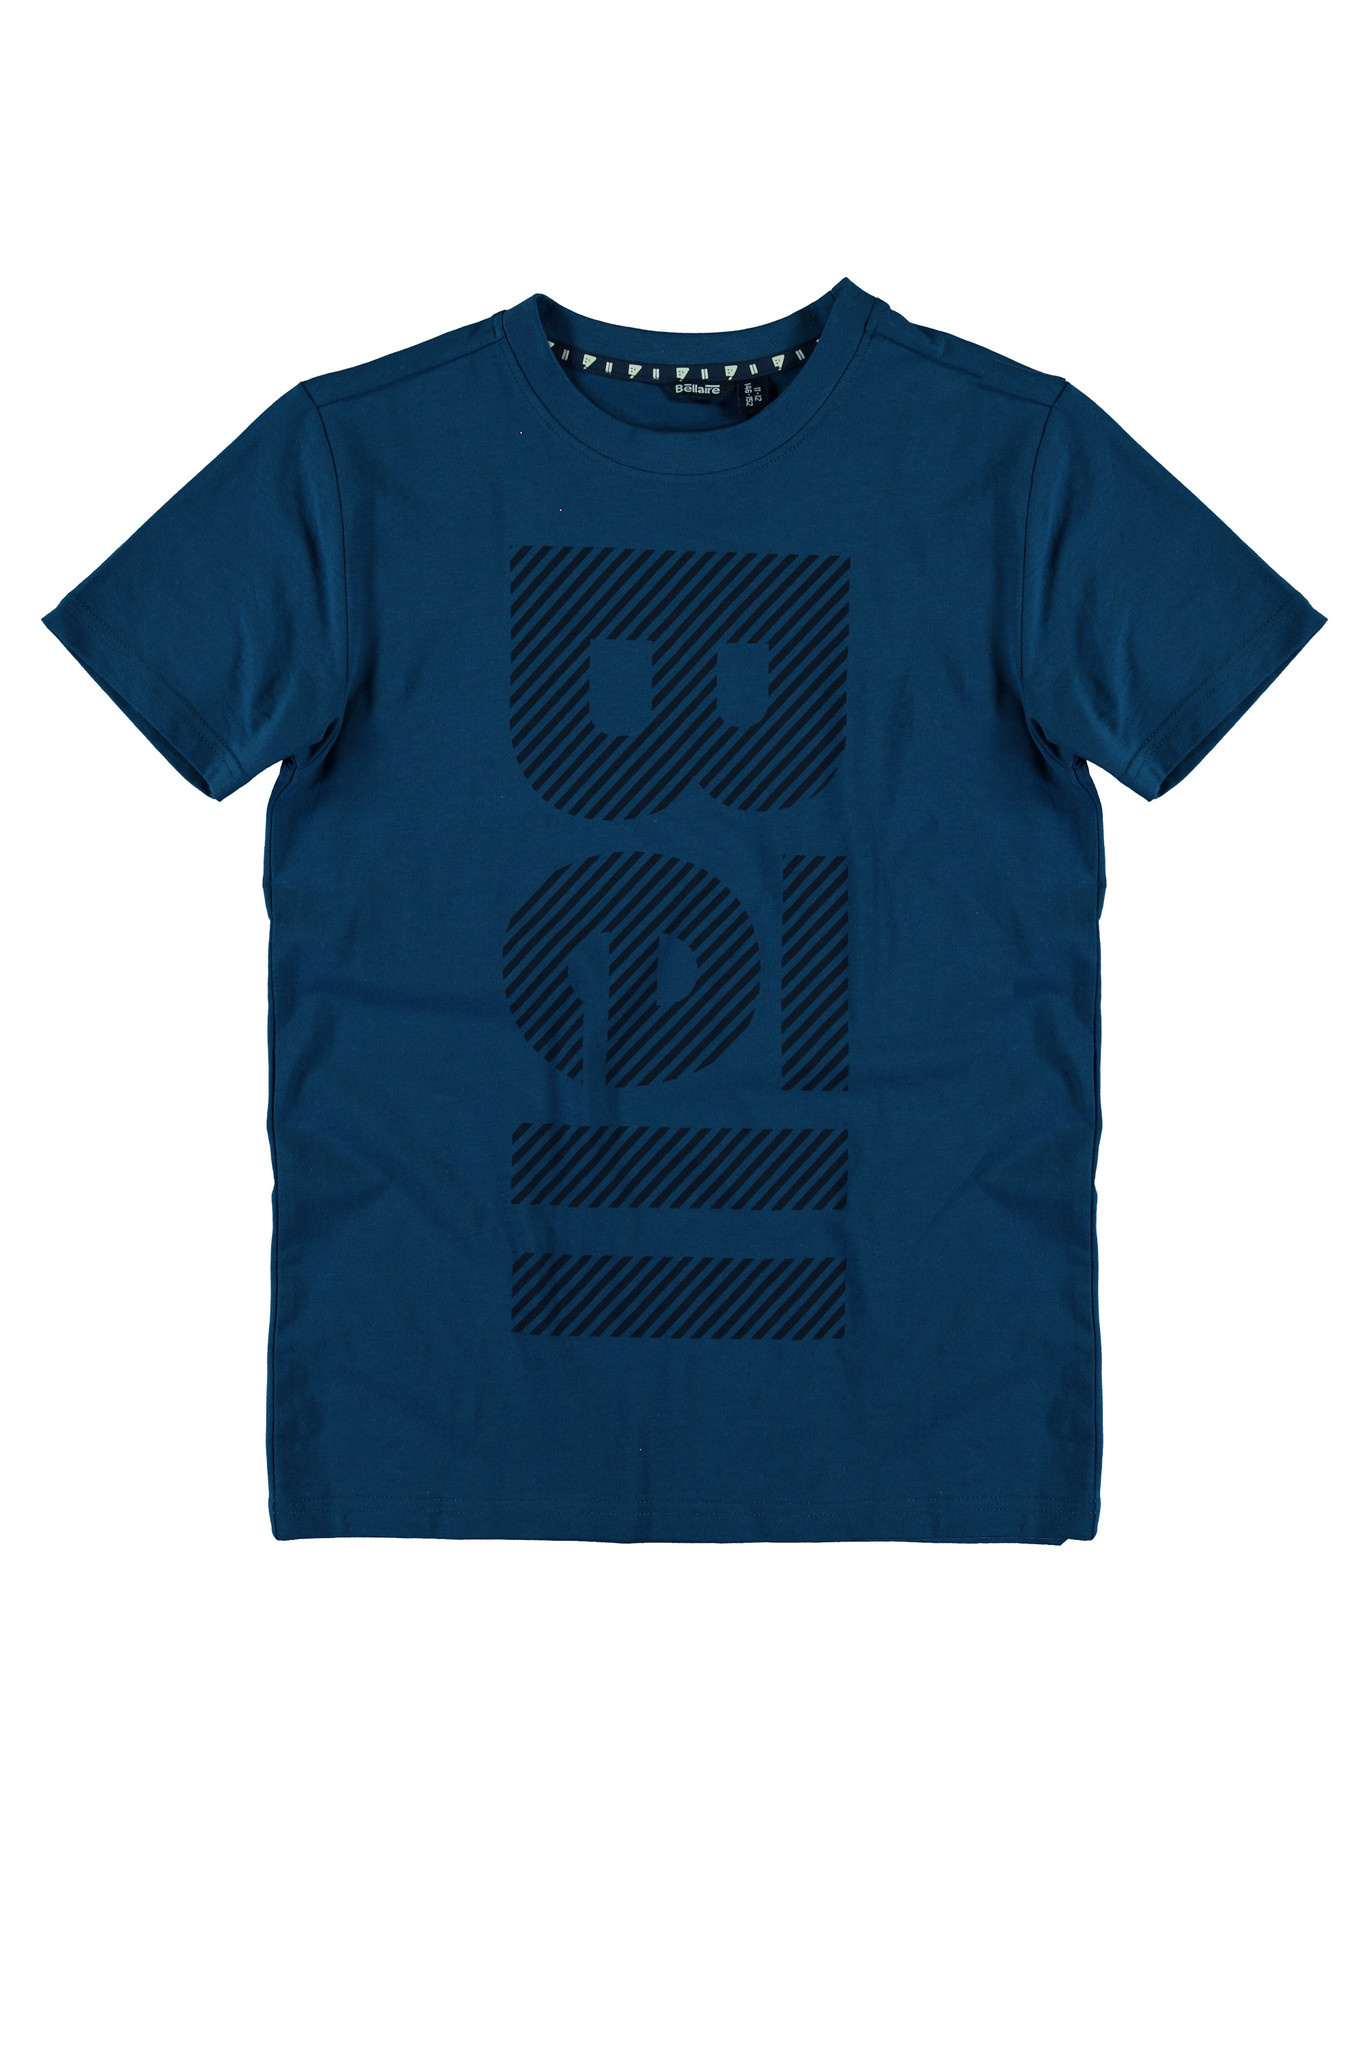 Bellaire jongens t-shirt met groot logo Blue Opal